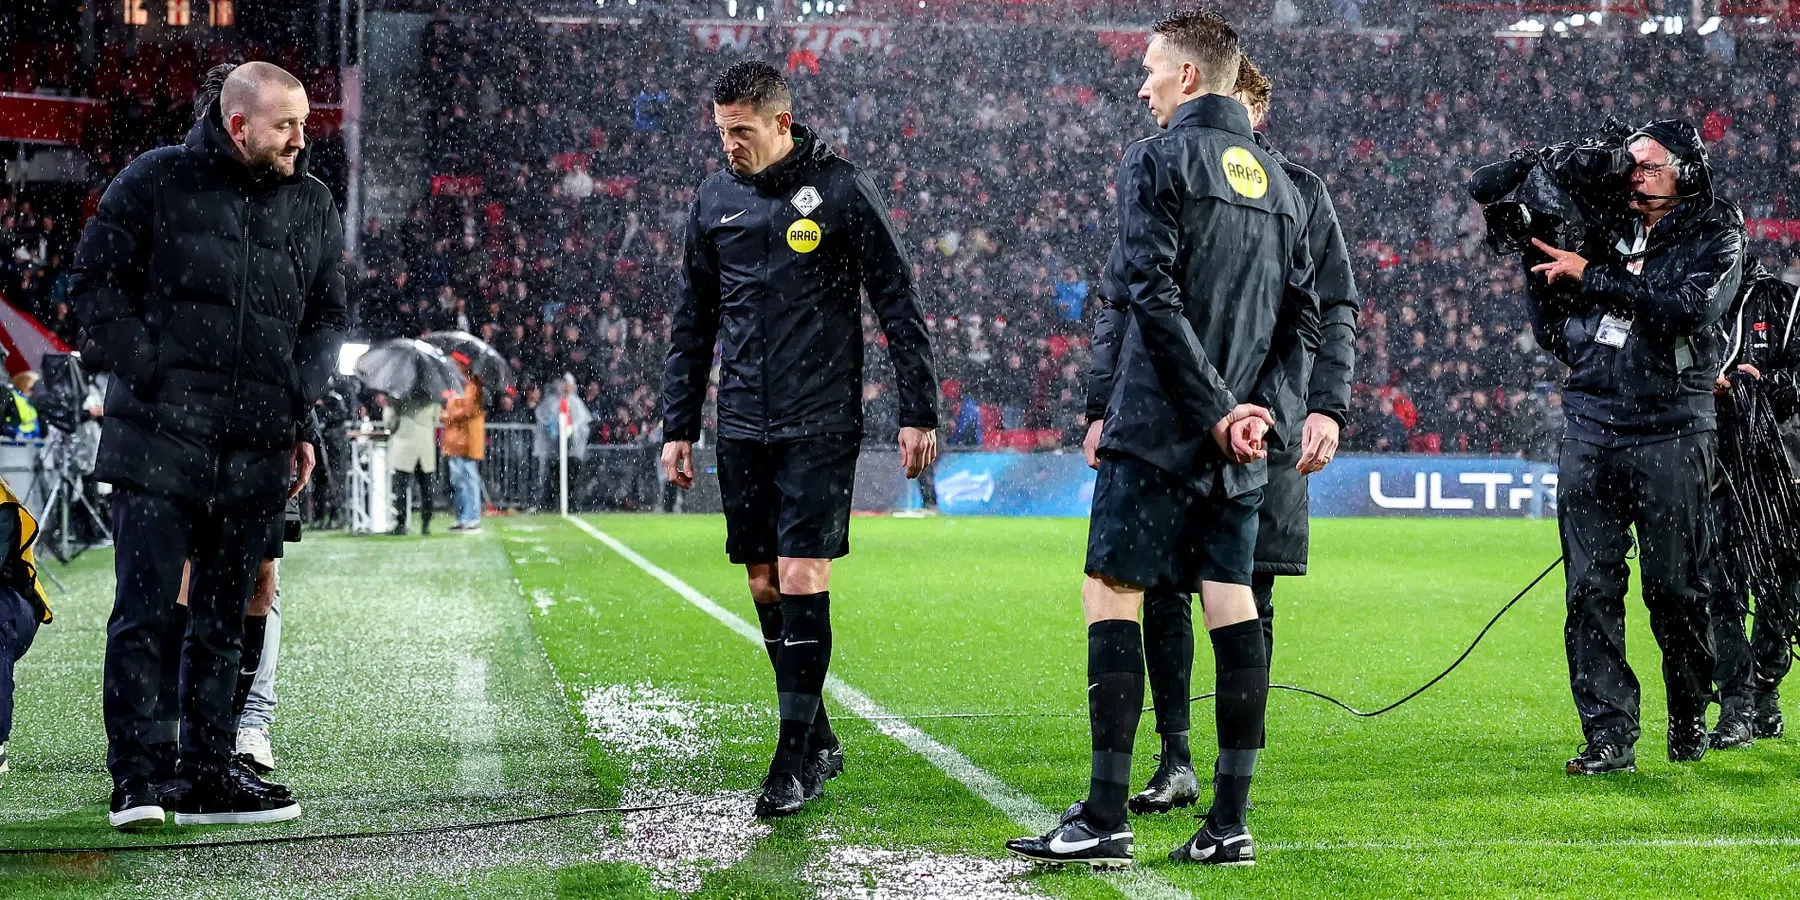 PSV verschaft duidelijkheid: datum bekerwedstrijd tegen FC Twente bekend